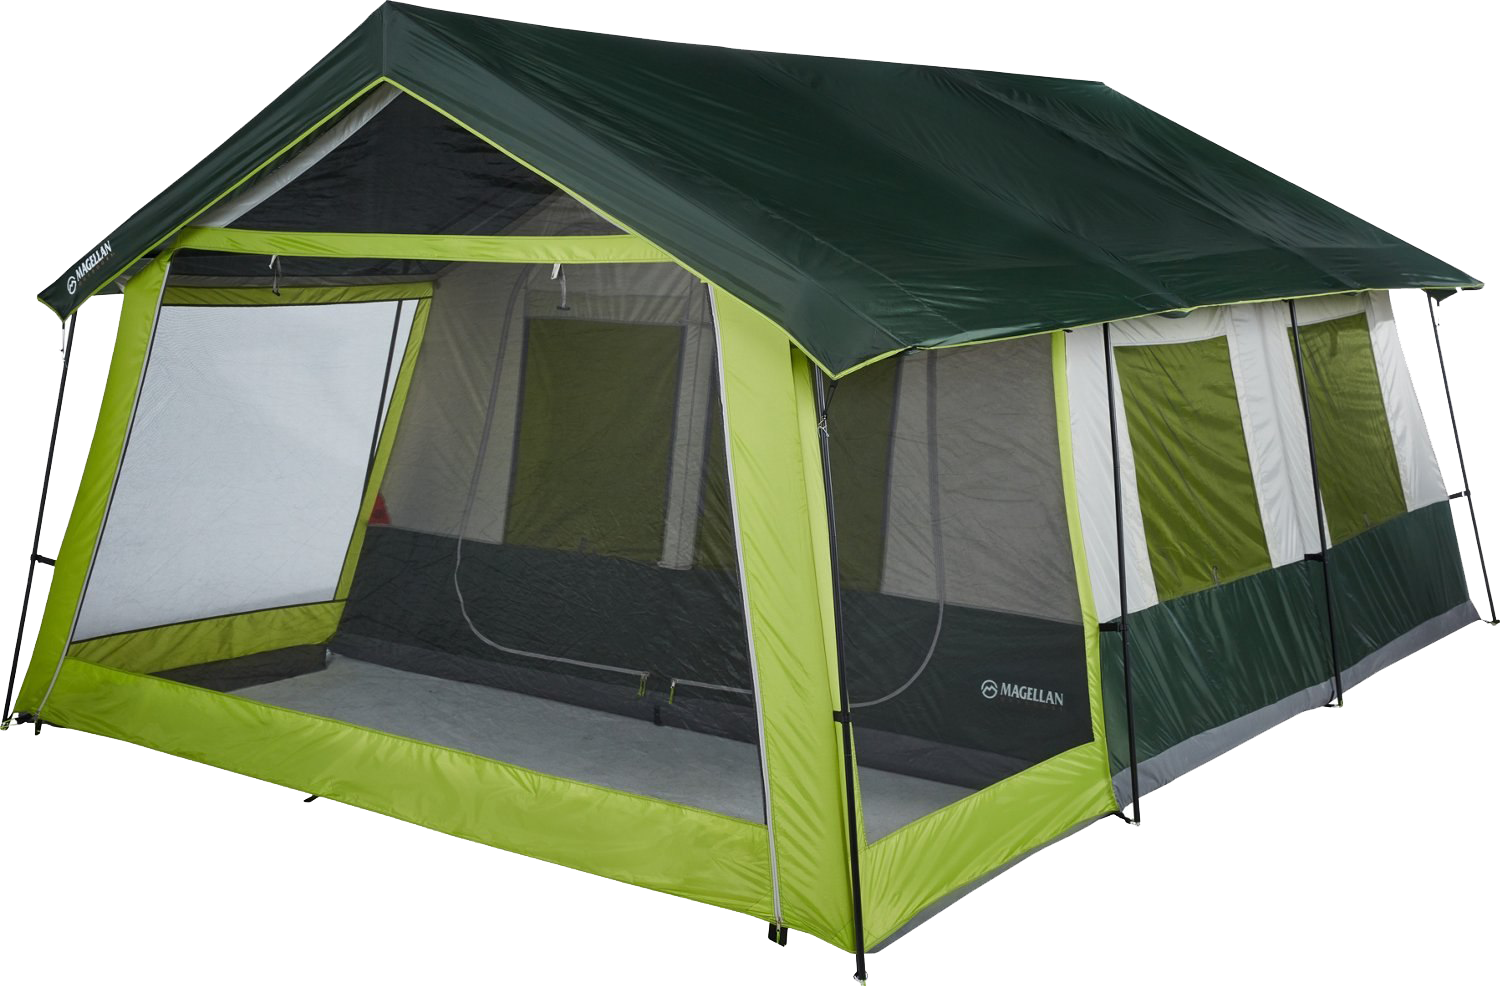 Купить палатку м. Лагерь модульный (шатер и 2 палатки) Nash Base Camp. Quechua mh100 палатка. Палатка кемпинг домик зеленый xyp602. Палатка best Camp 165*165.